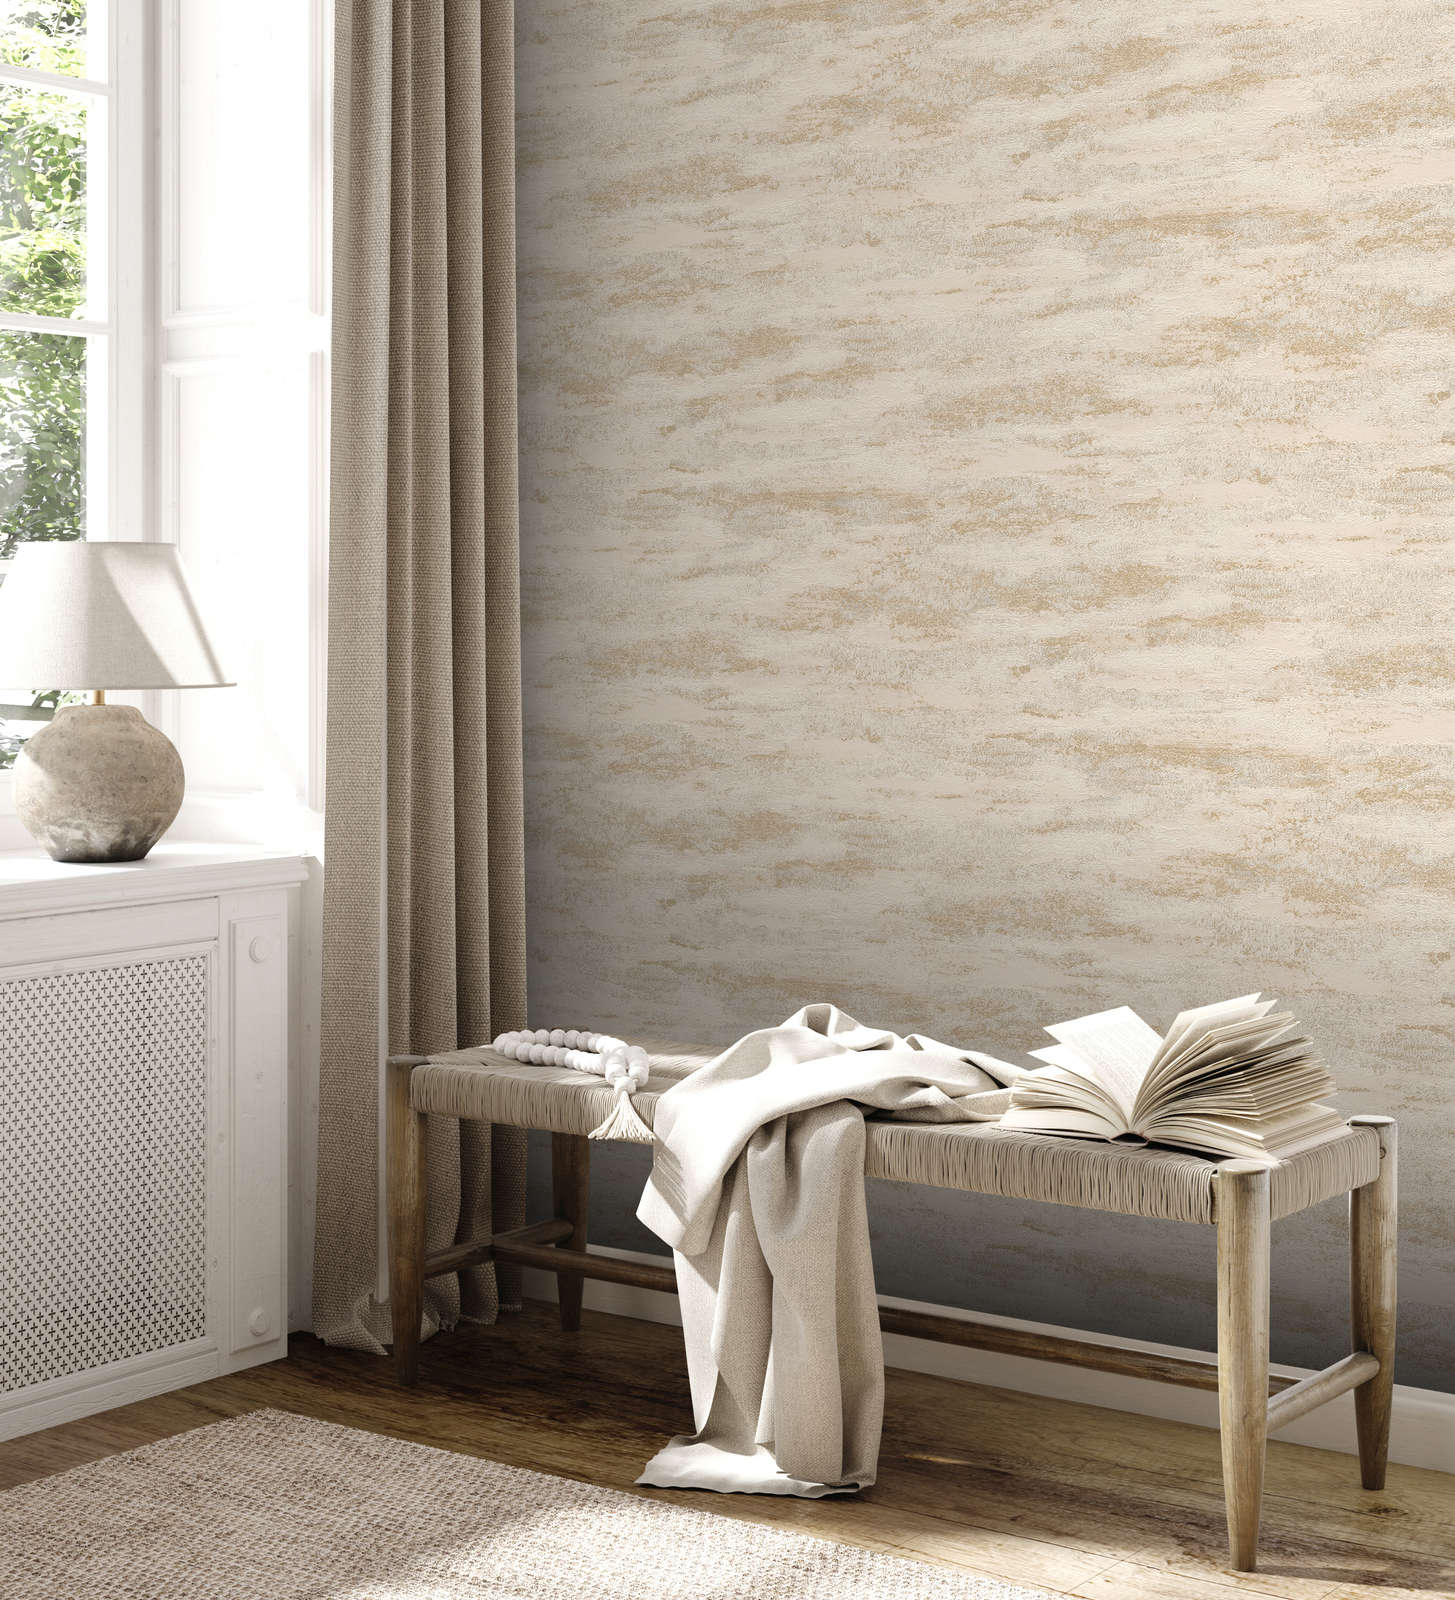             Pattern wallpaper with light glitter & wave pattern - beige
        